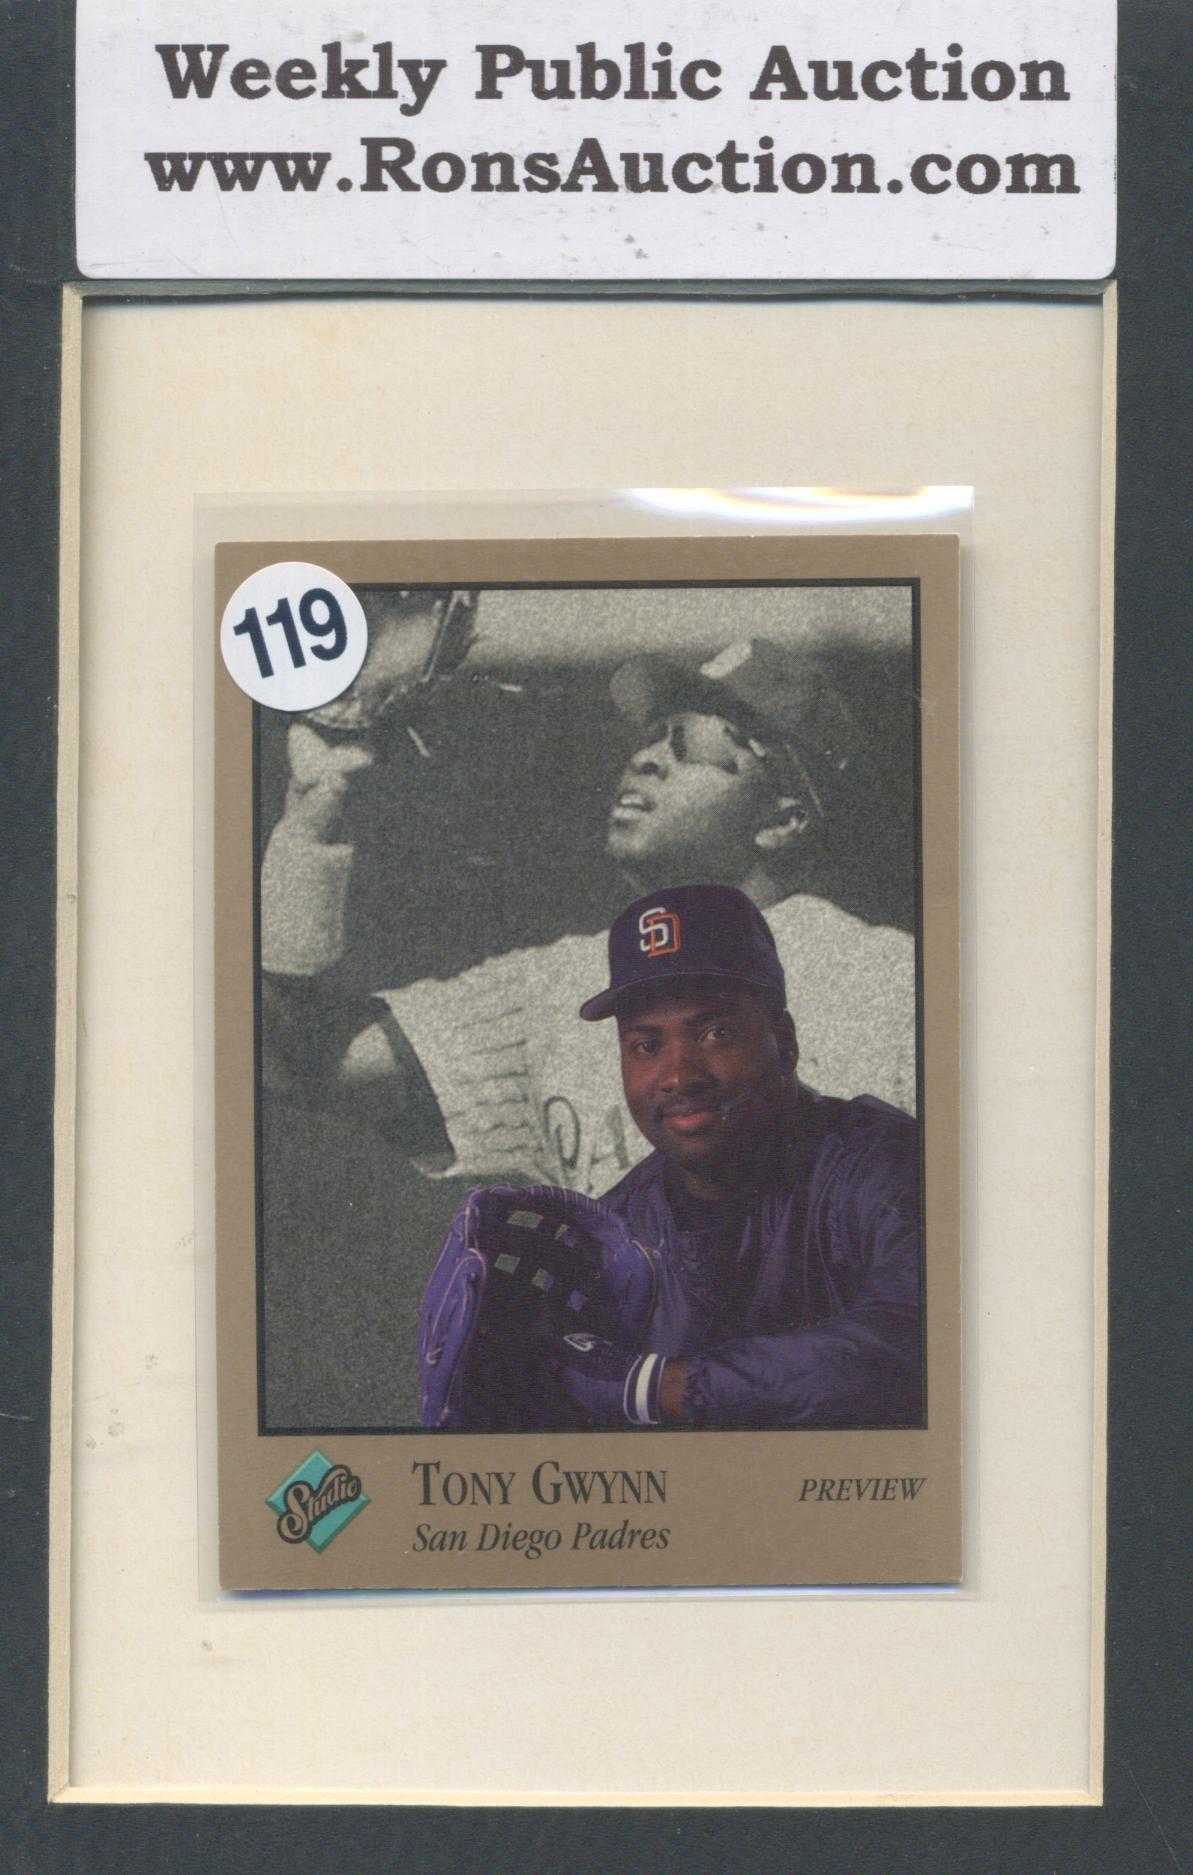 Trony Gwynn Studio 92' Leaf Baseball Promo Card